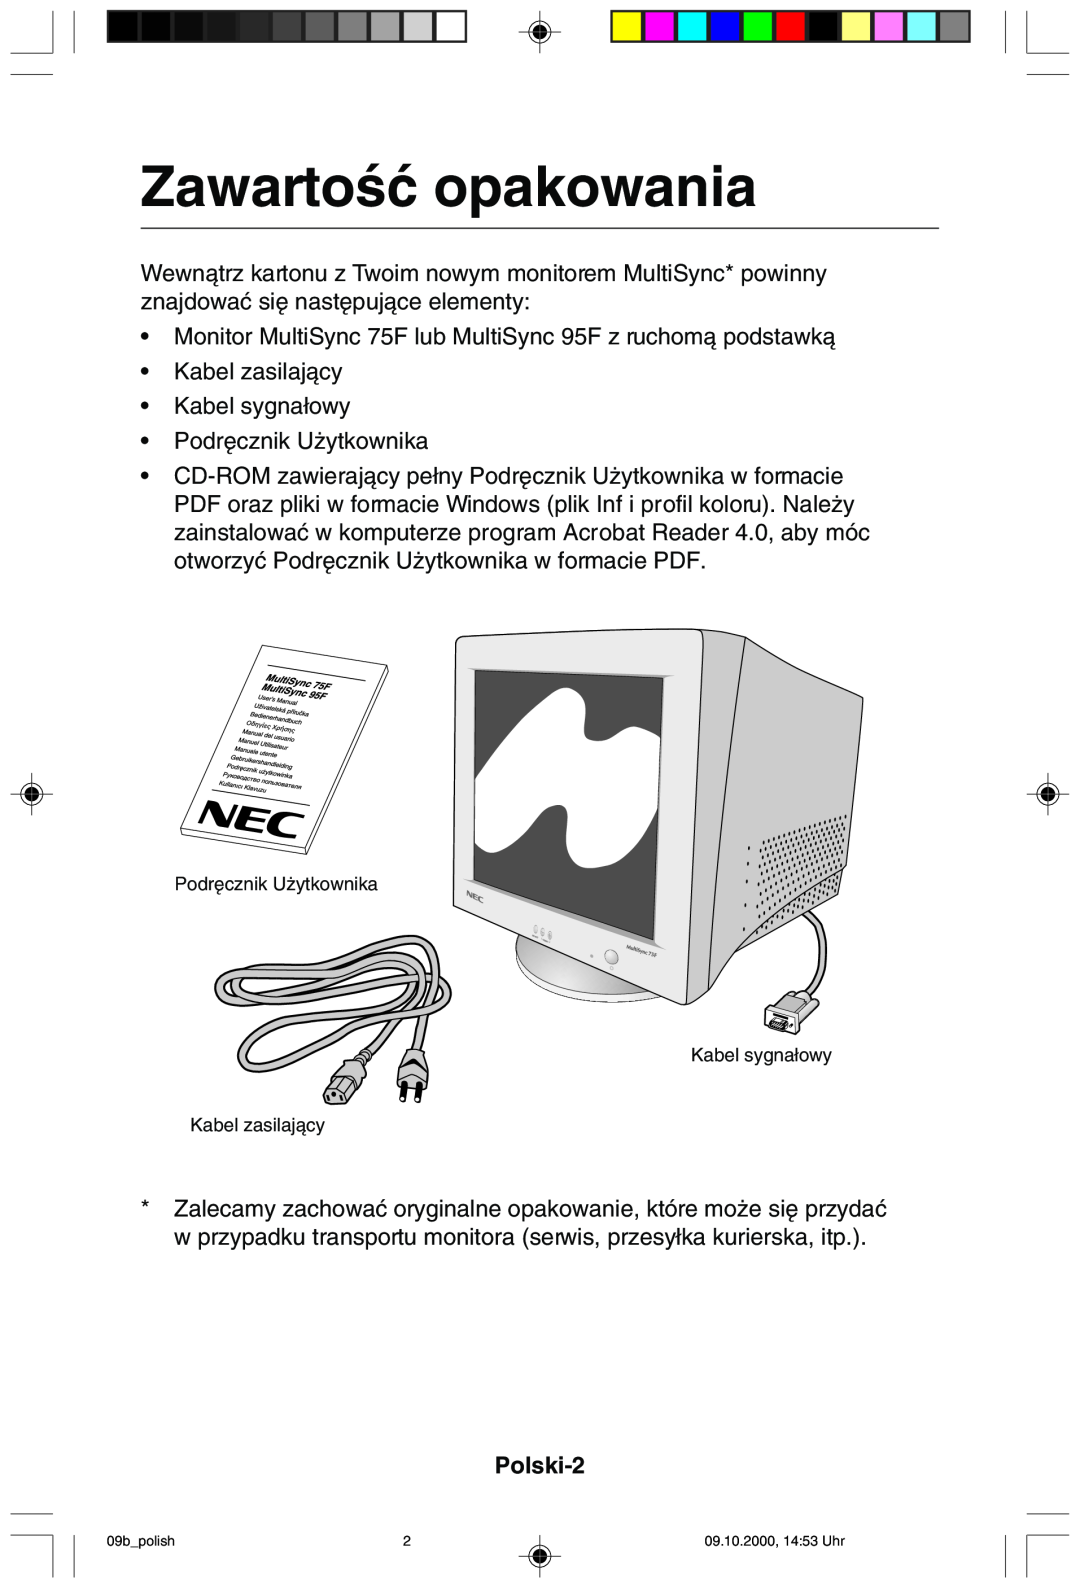 NEC 95F user manual ZawartoÊç opakowania, Polski-2 